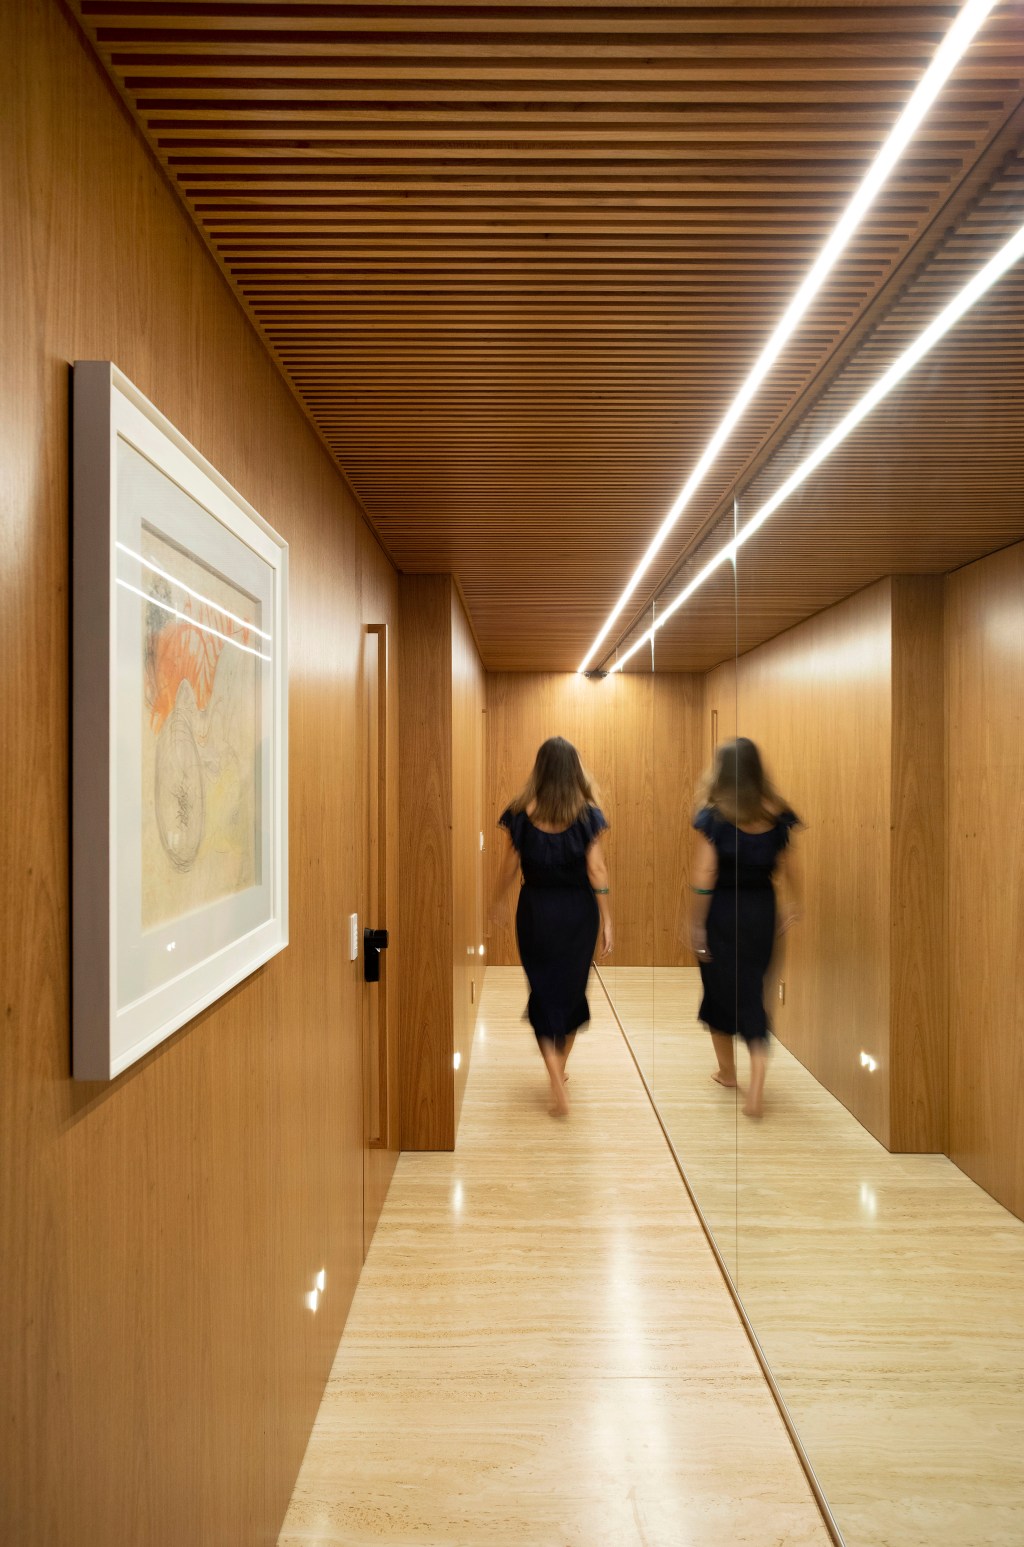 Grande adega marcenaria multiuso apê 230 m² Studio 021 Arquitetura decoração corredor quadro madeira espelho